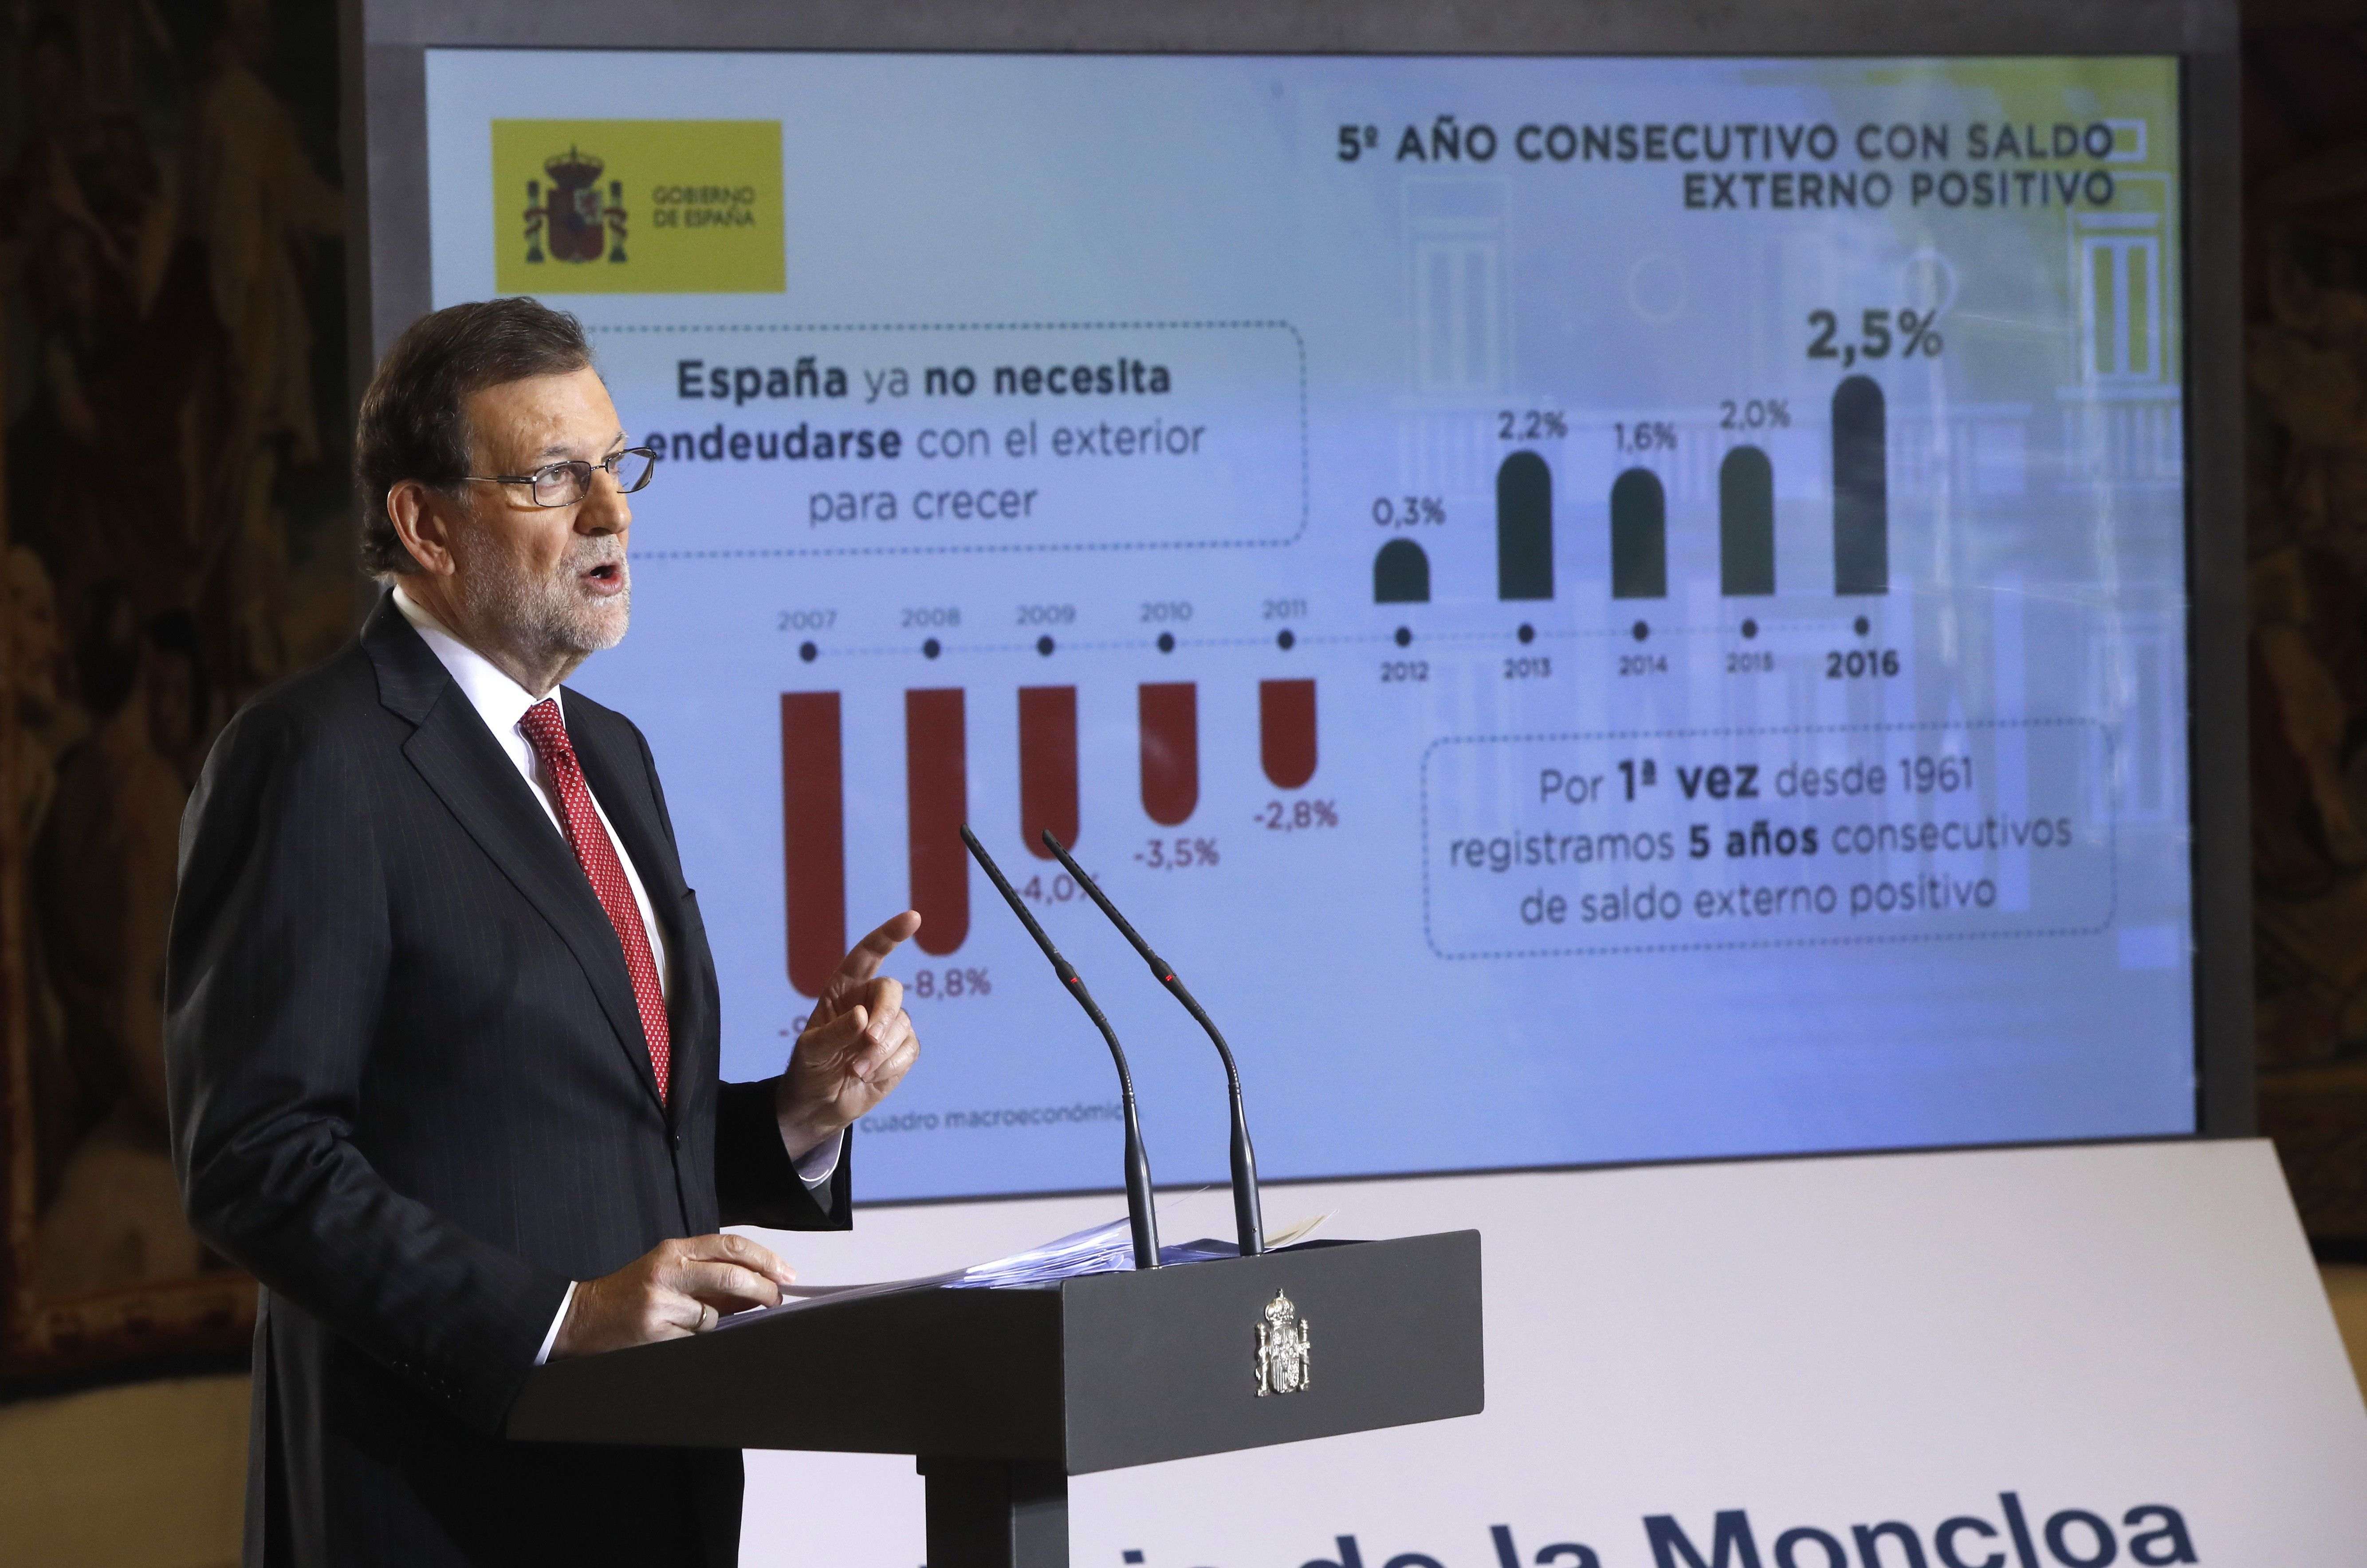 El diálogo de Rajoy: "No daremos ningún apoyo a un referéndum que liquide la soberanía nacional"